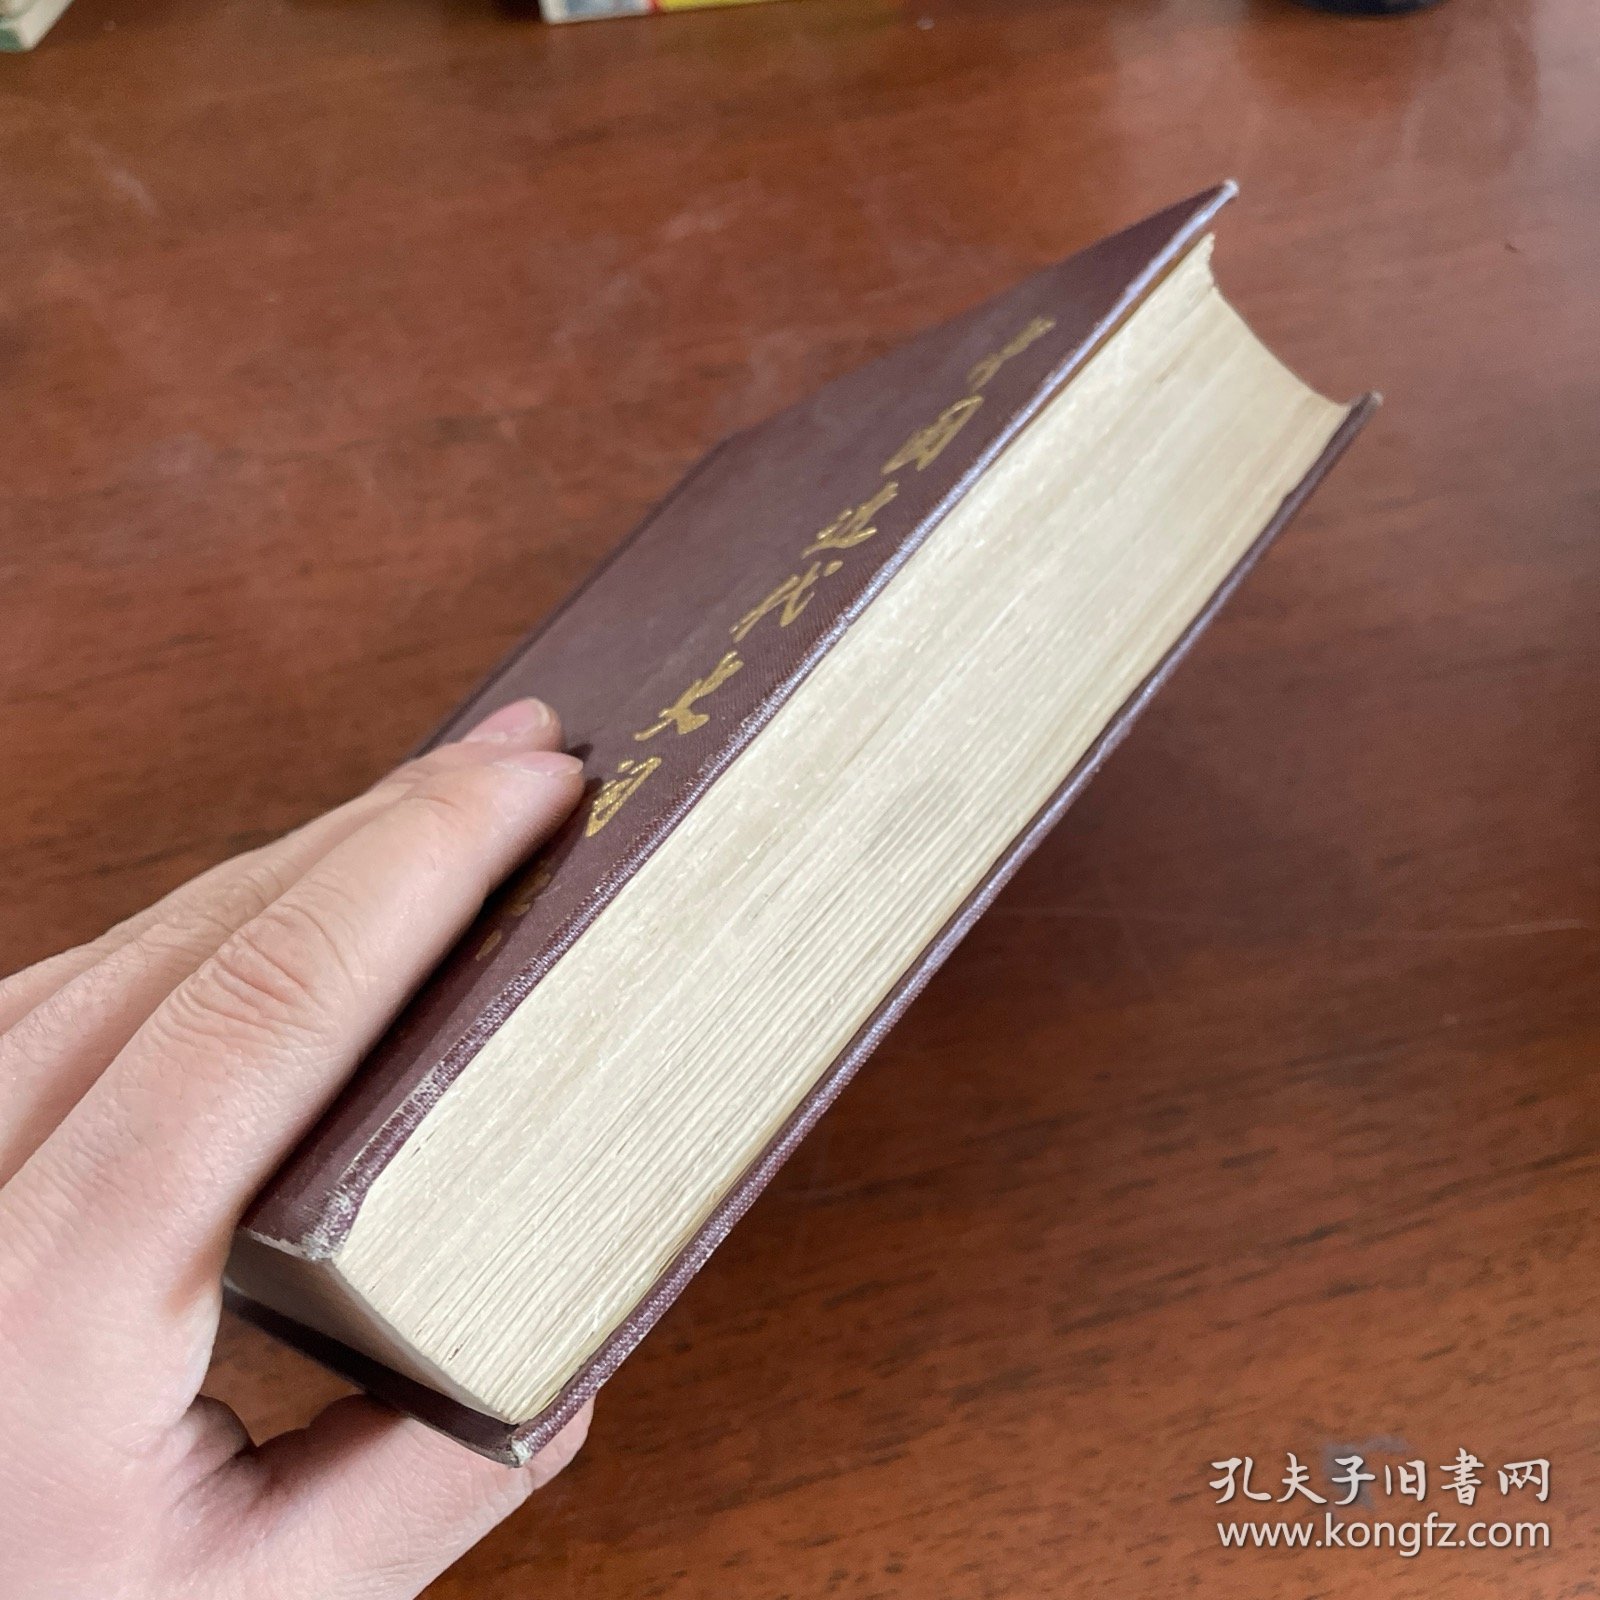 中国近代史词典 精装